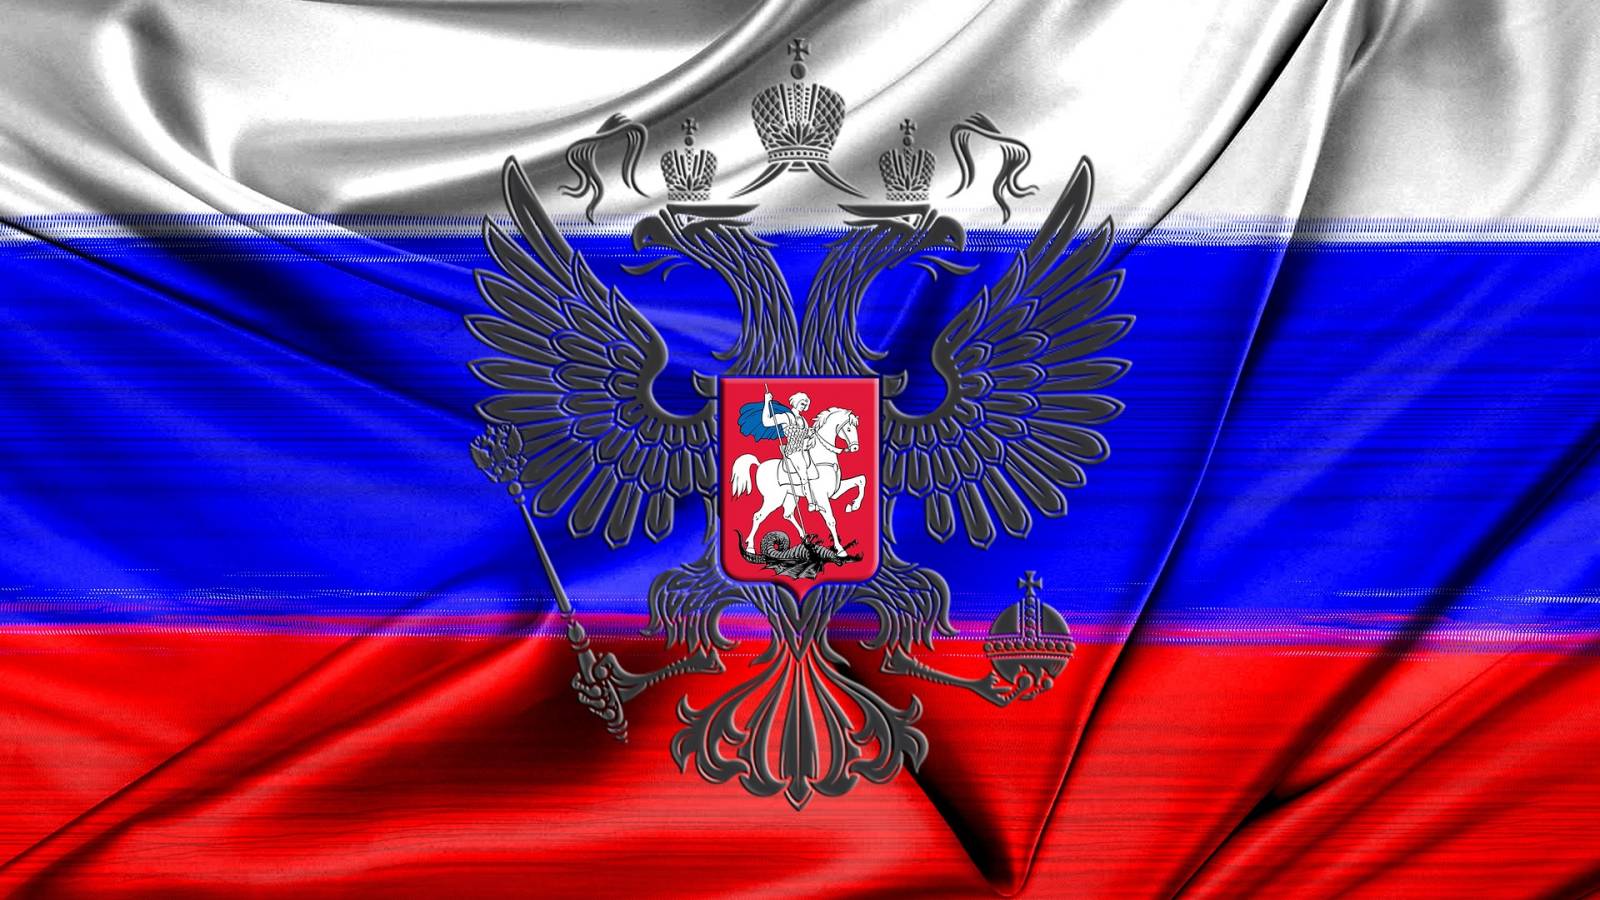 Rosja groziła Gruzji, co mówi o Władimirze Putinie